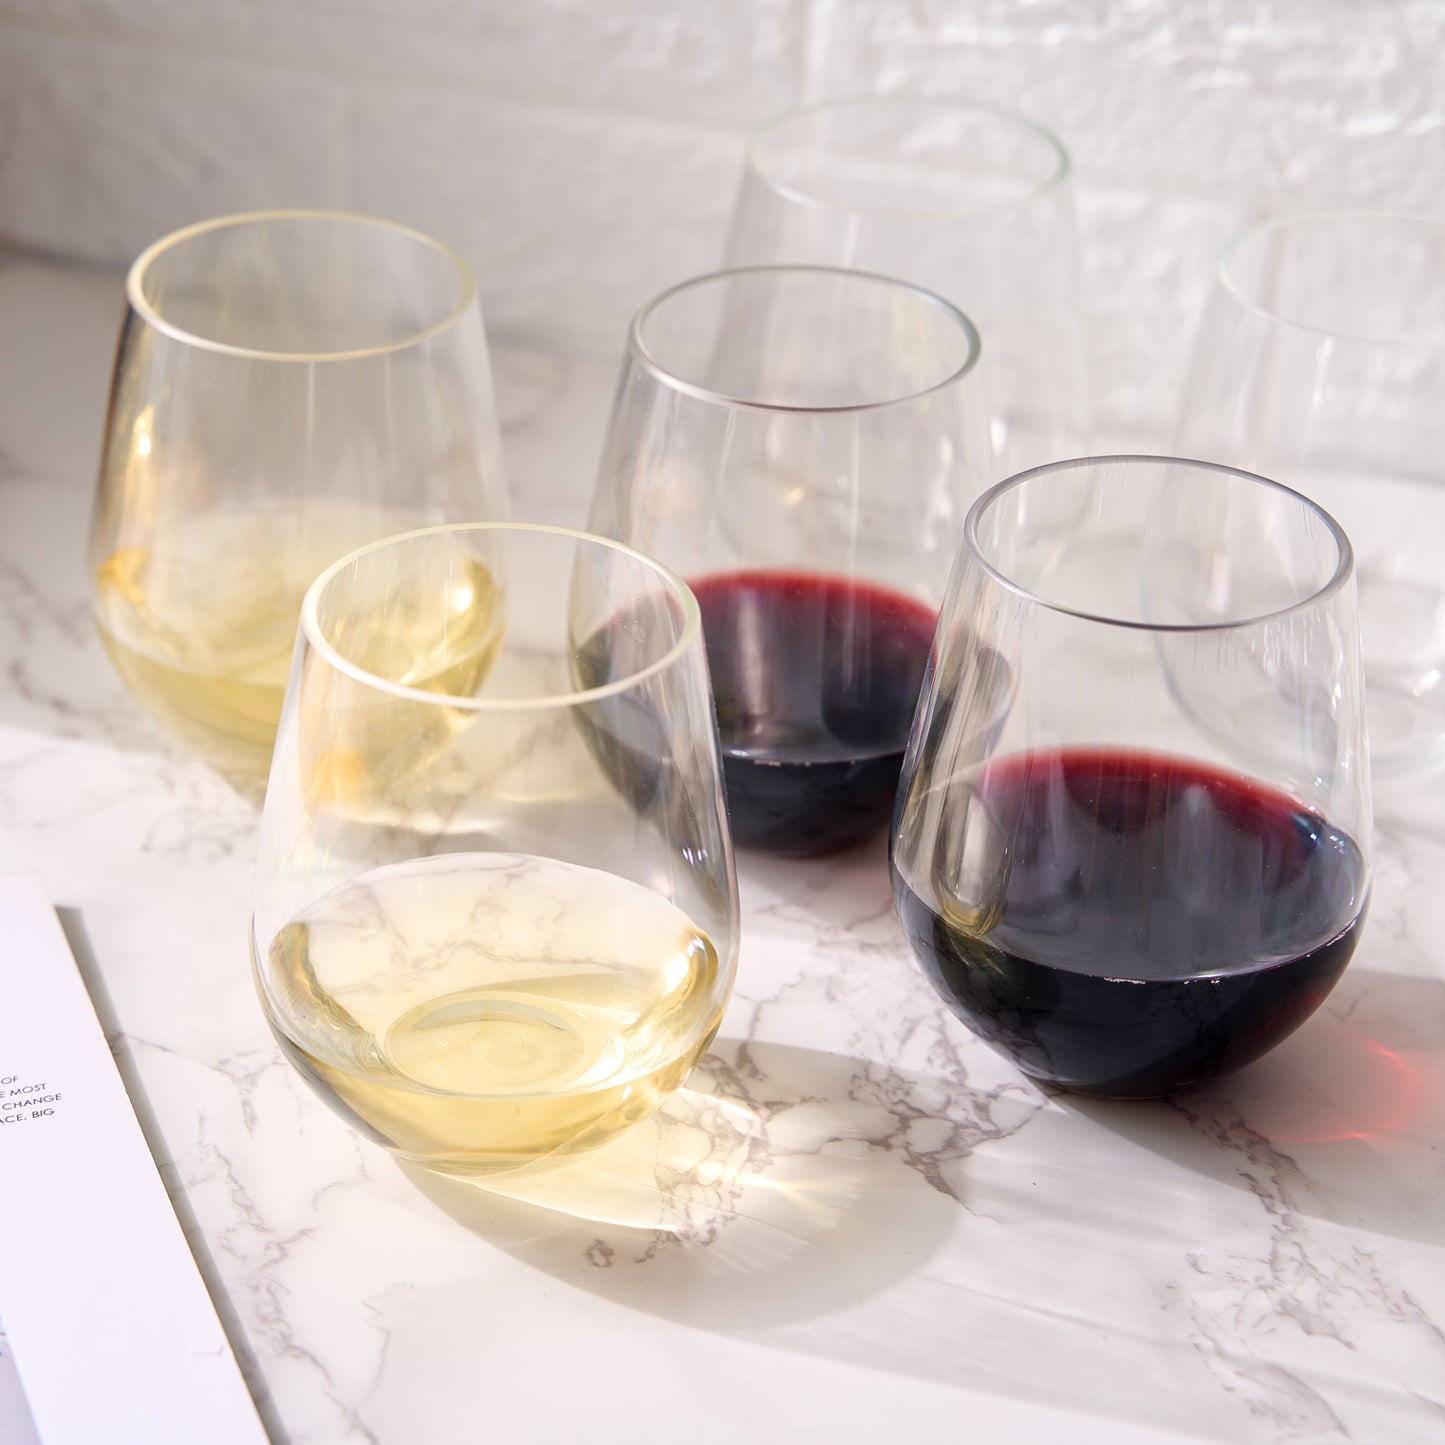 Barcelona Wine Glassware, Unbreakable Acrylic, Set of 4